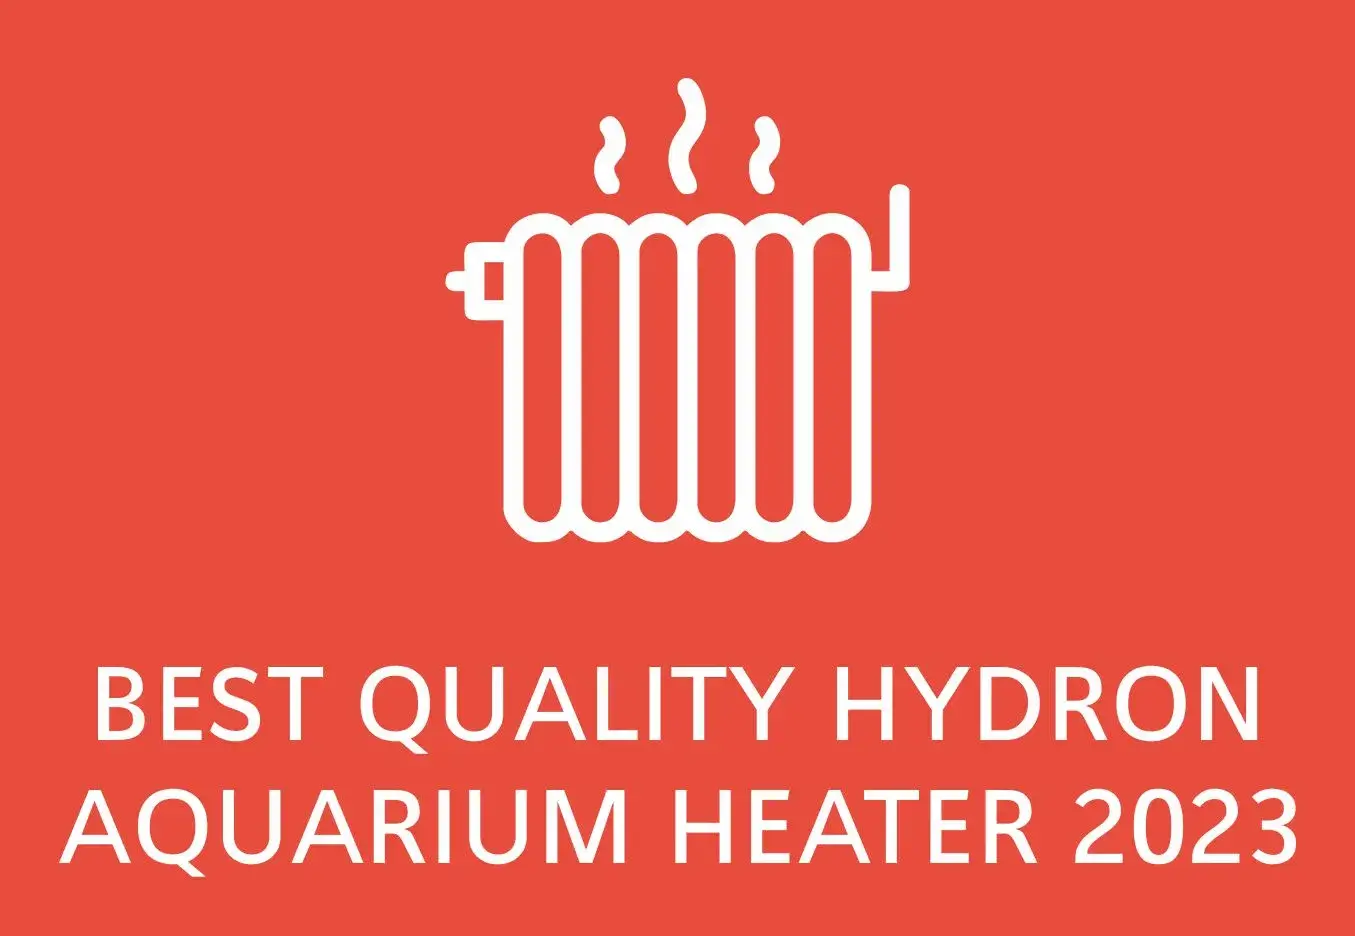 Best quality Hydor aquarium heaters for fish tanks 2023